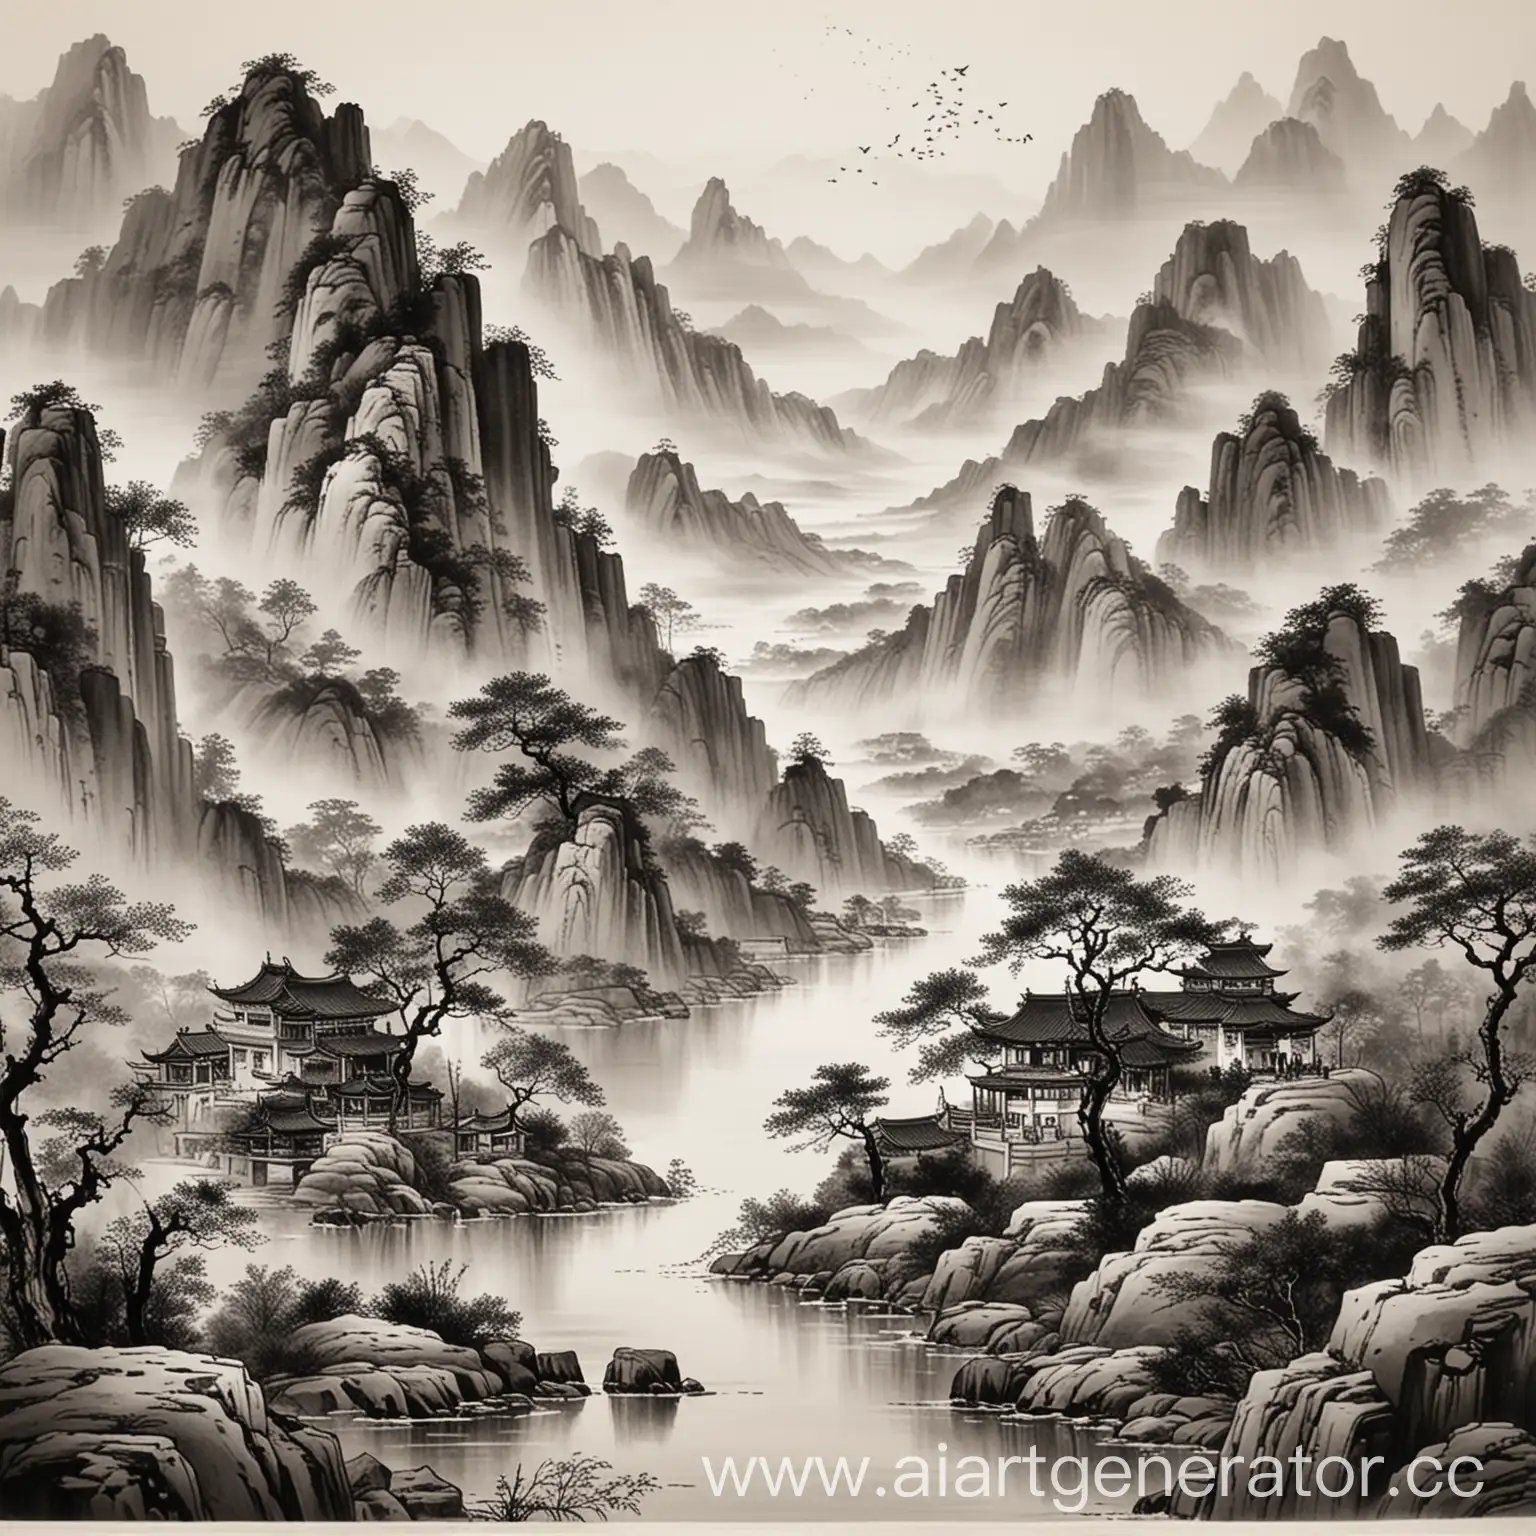 китайская живопись гохуа монохром с горами